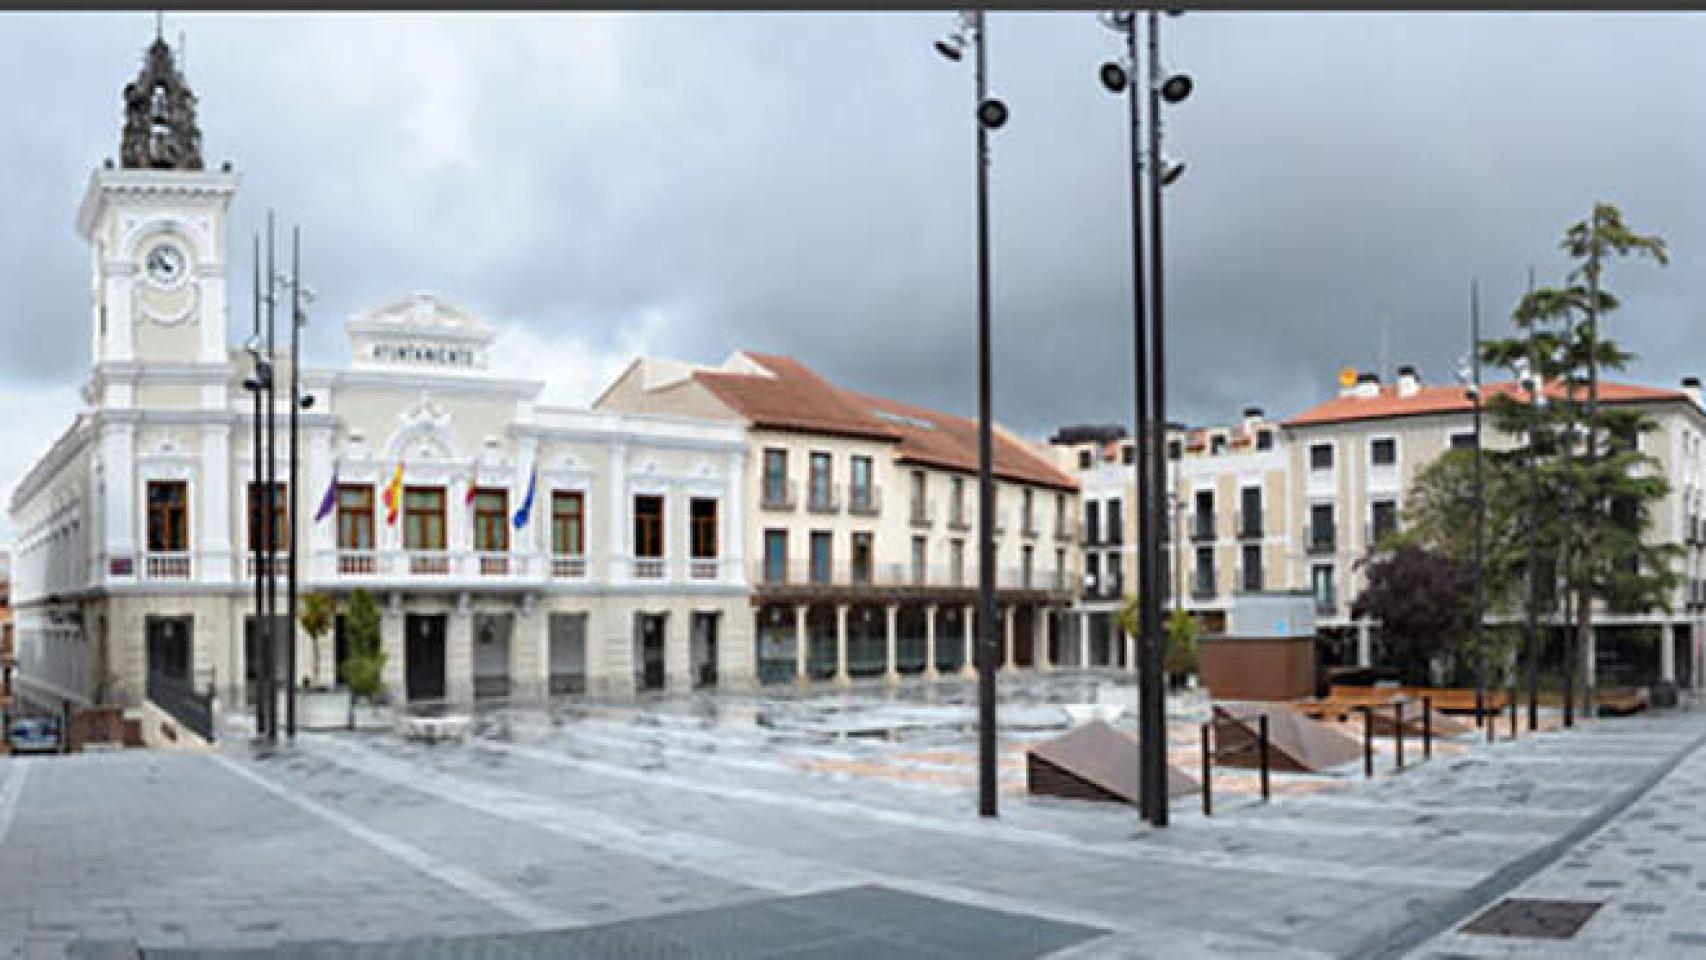 Ayuntamiento de Guadalajara.